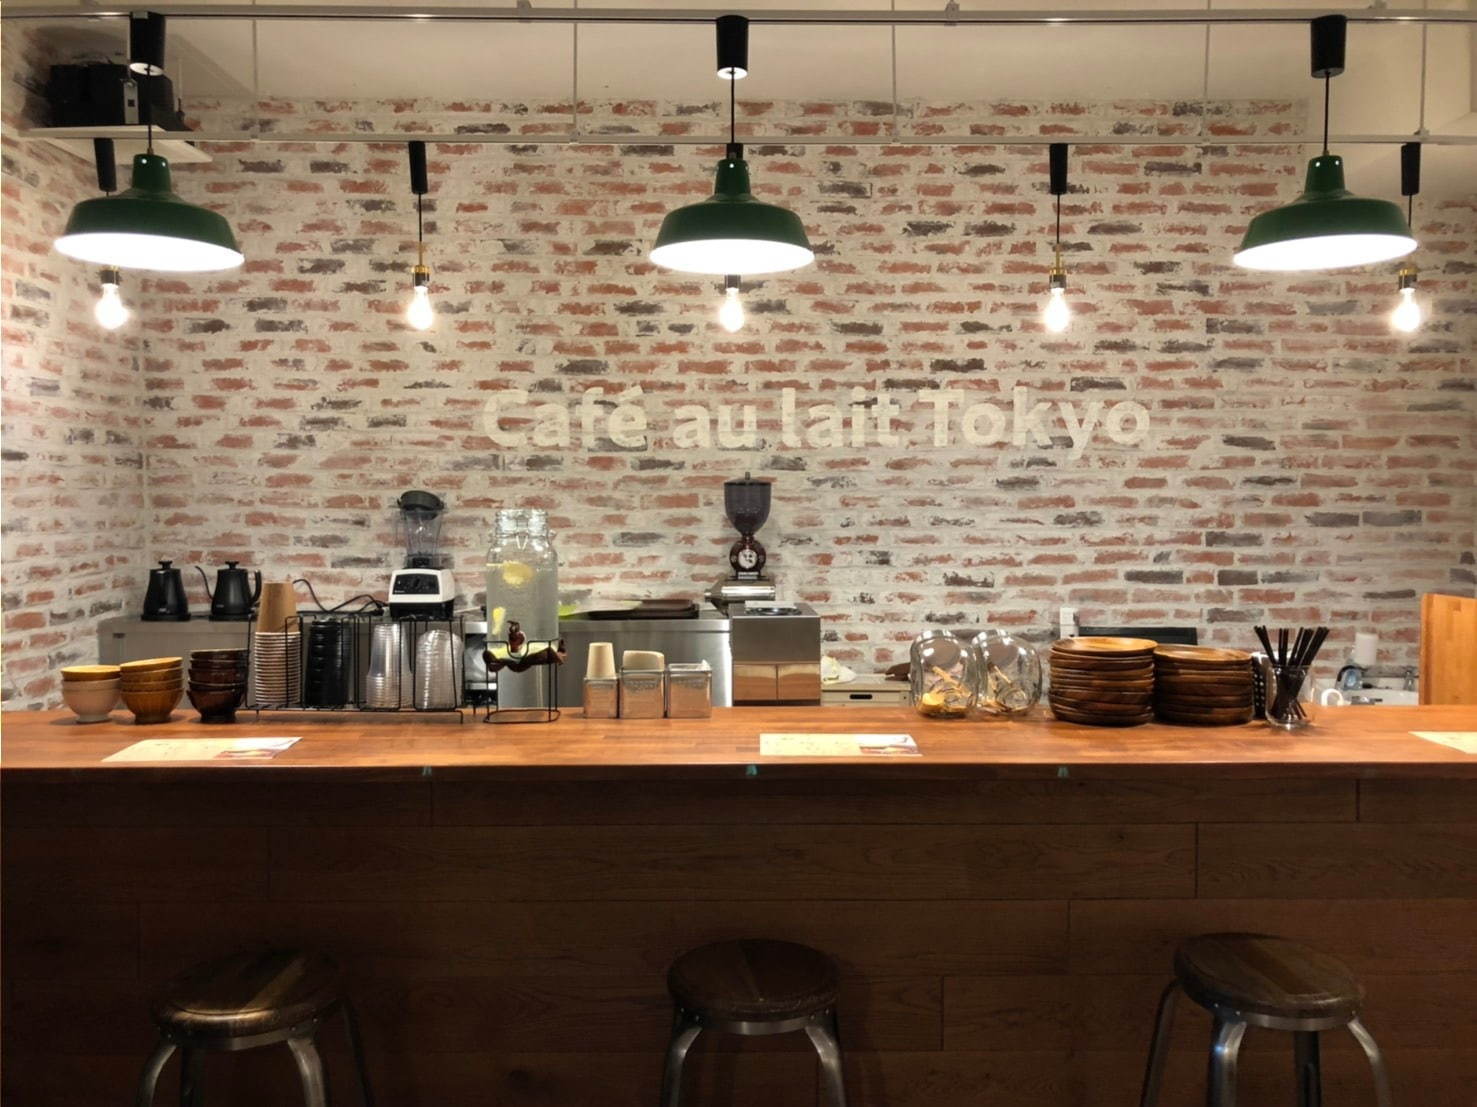 カフェオレ専門店「Cafe au lait Tokyo」が高田馬場に、メニューは3種のカフェオレのみ｜写真4